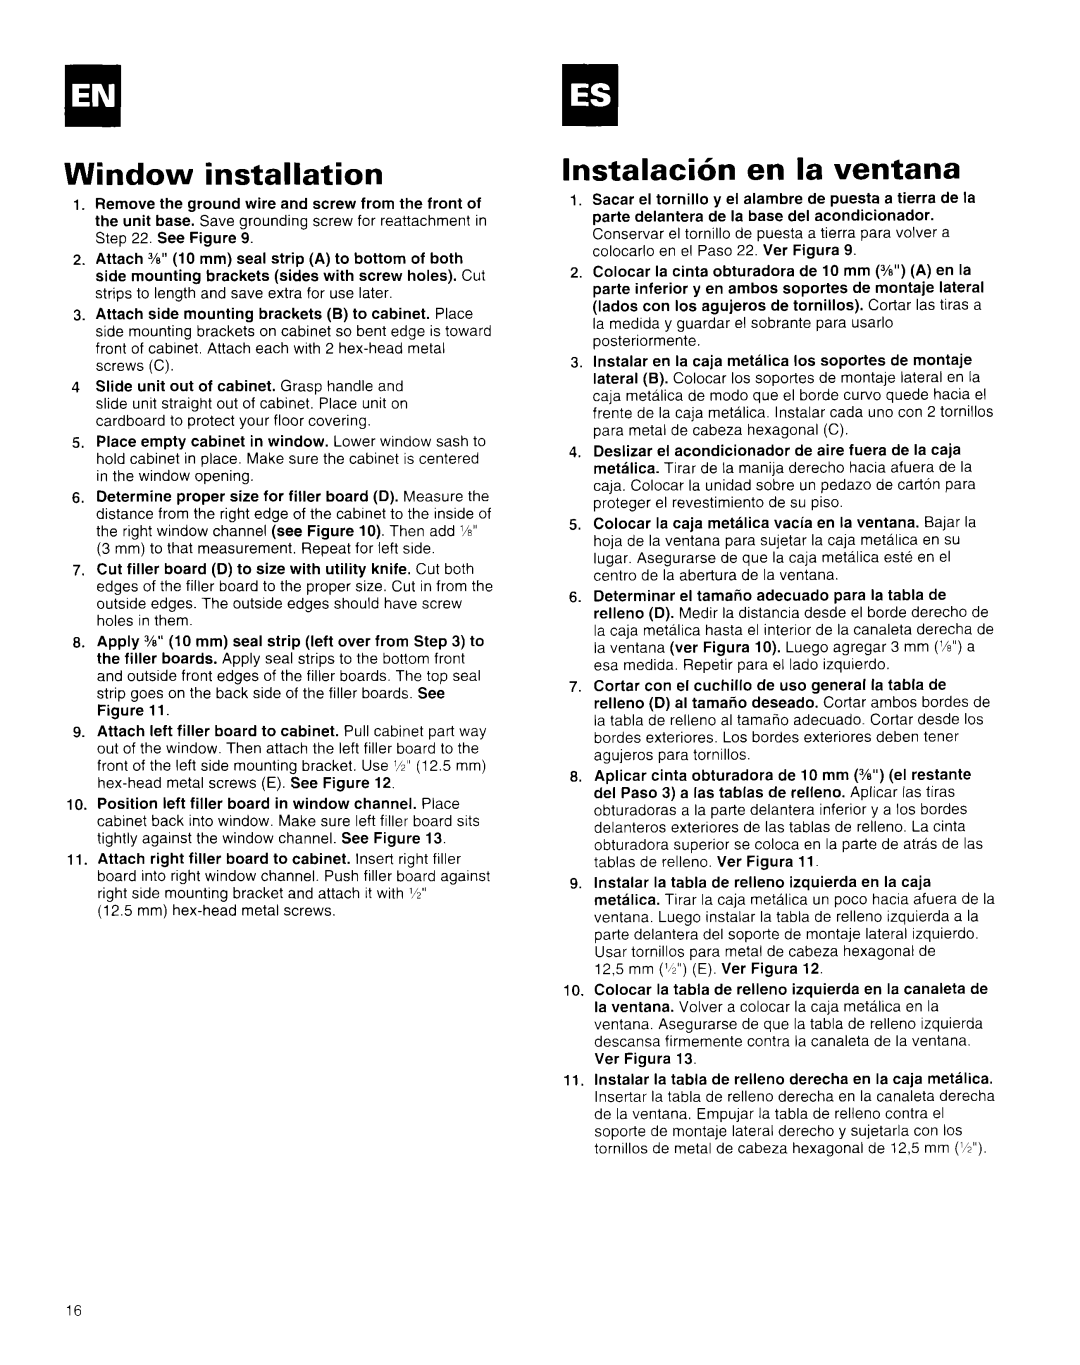 Whirlpool AR1800XA0 manual Window installation, InstalacicSn en la ventana 